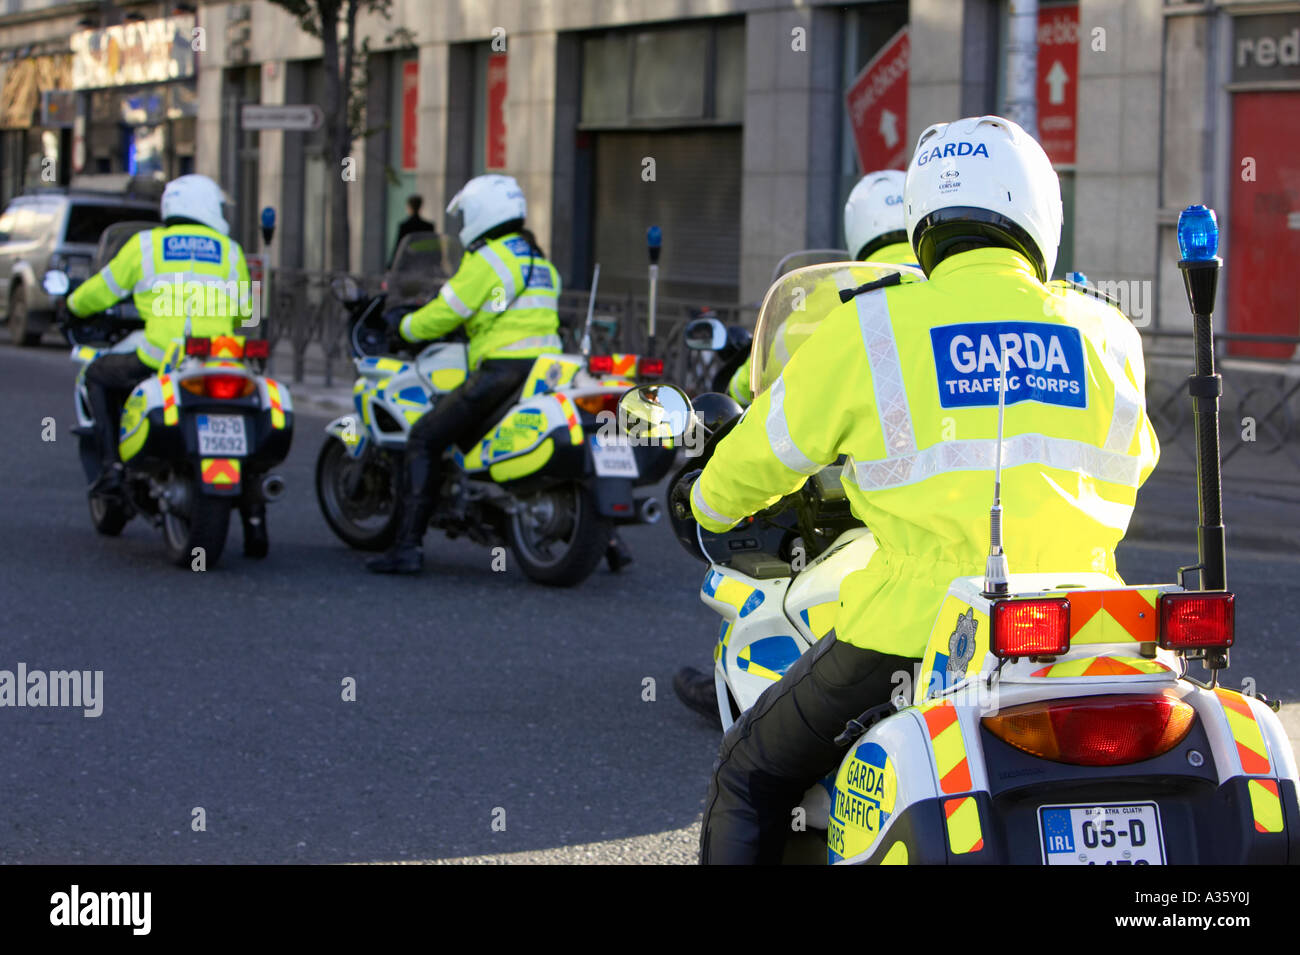 Garda Siochana irische Polizei Verkehrspolizei Polizisten auf Motorrädern auf Streife im Stadtzentrum von dublin Stockfoto